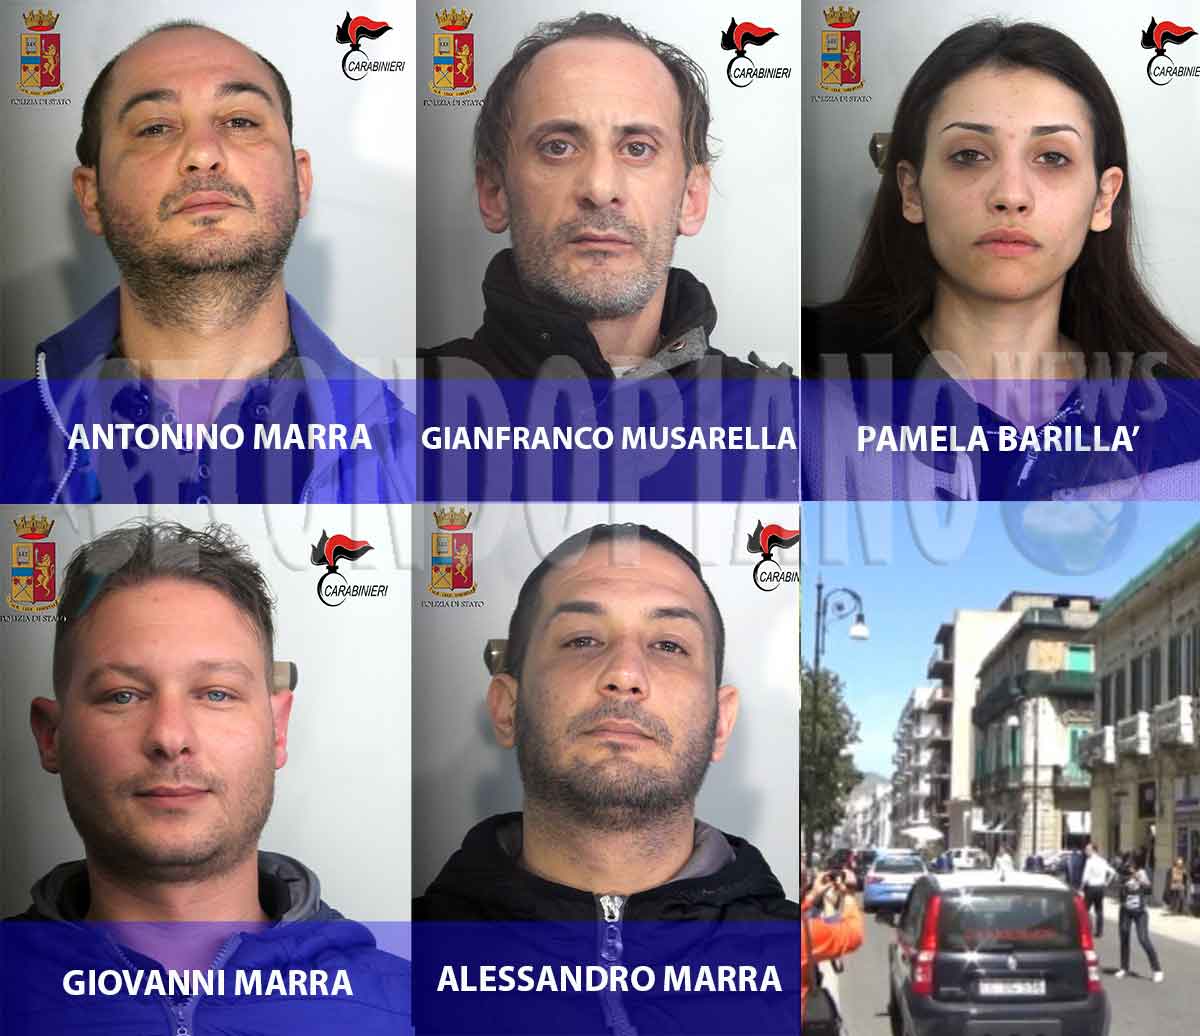 Le persone coinvolte nell'operazione Lampo a Reggio Calabria Gianfranco Musarella